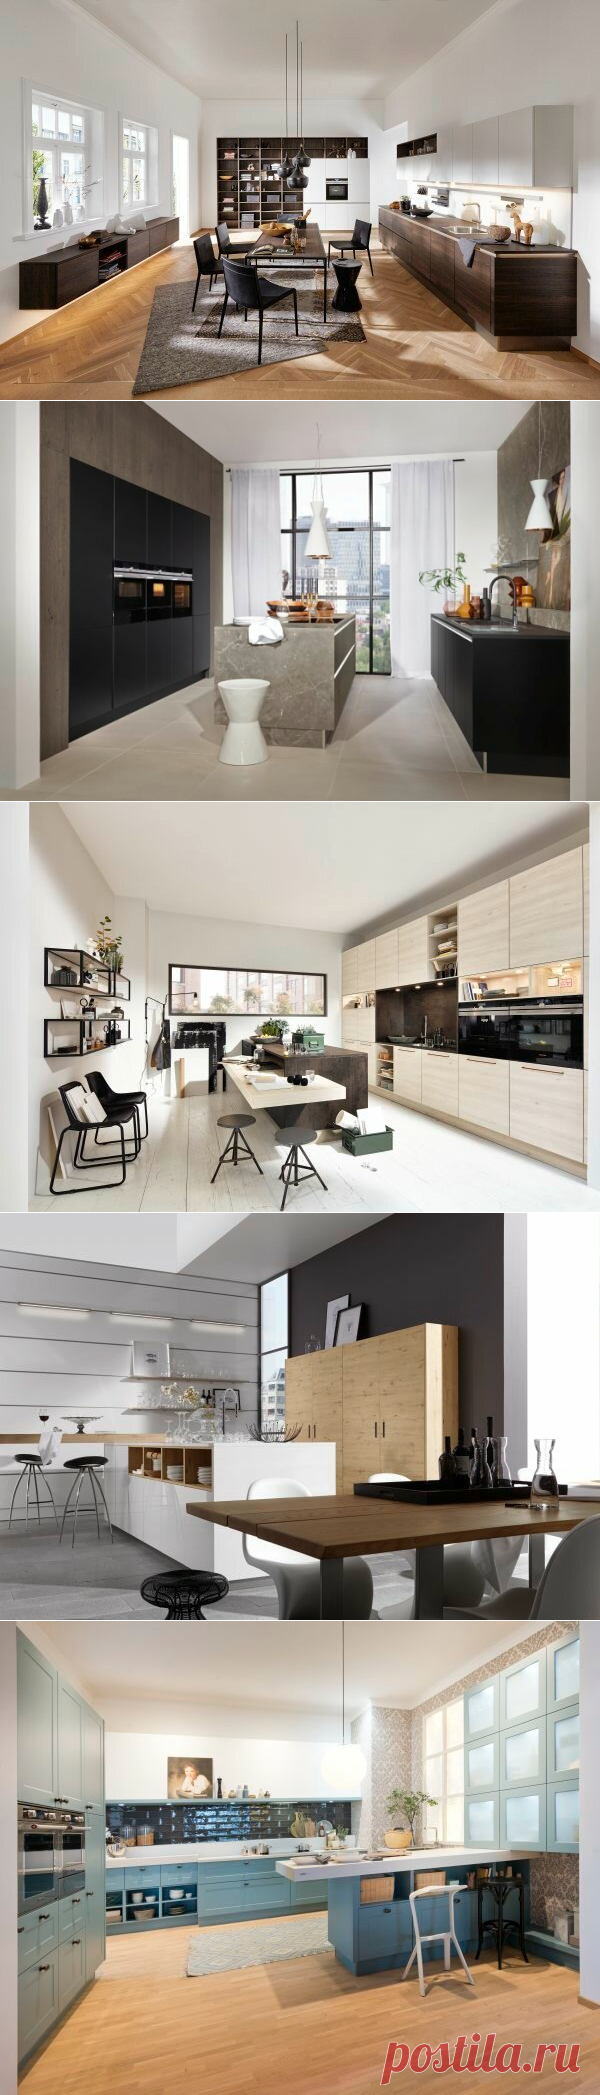 Тонкости дизайна кухни с окном | Nolte Küchen | Яндекс Дзен